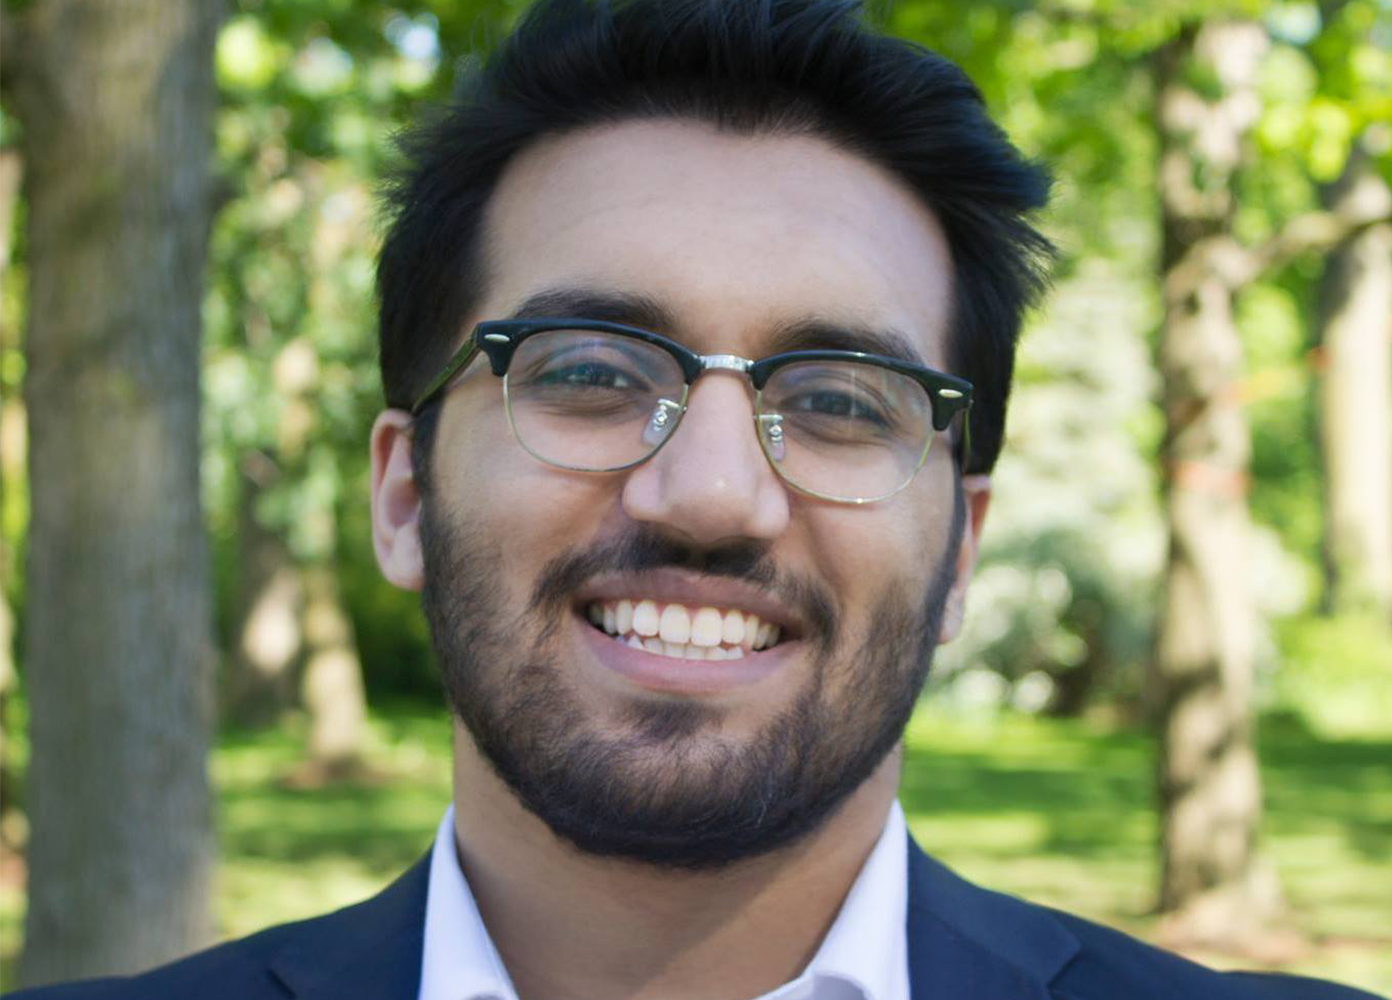 Alumni Spotlight: Mahad Shahzad (BBA '20)